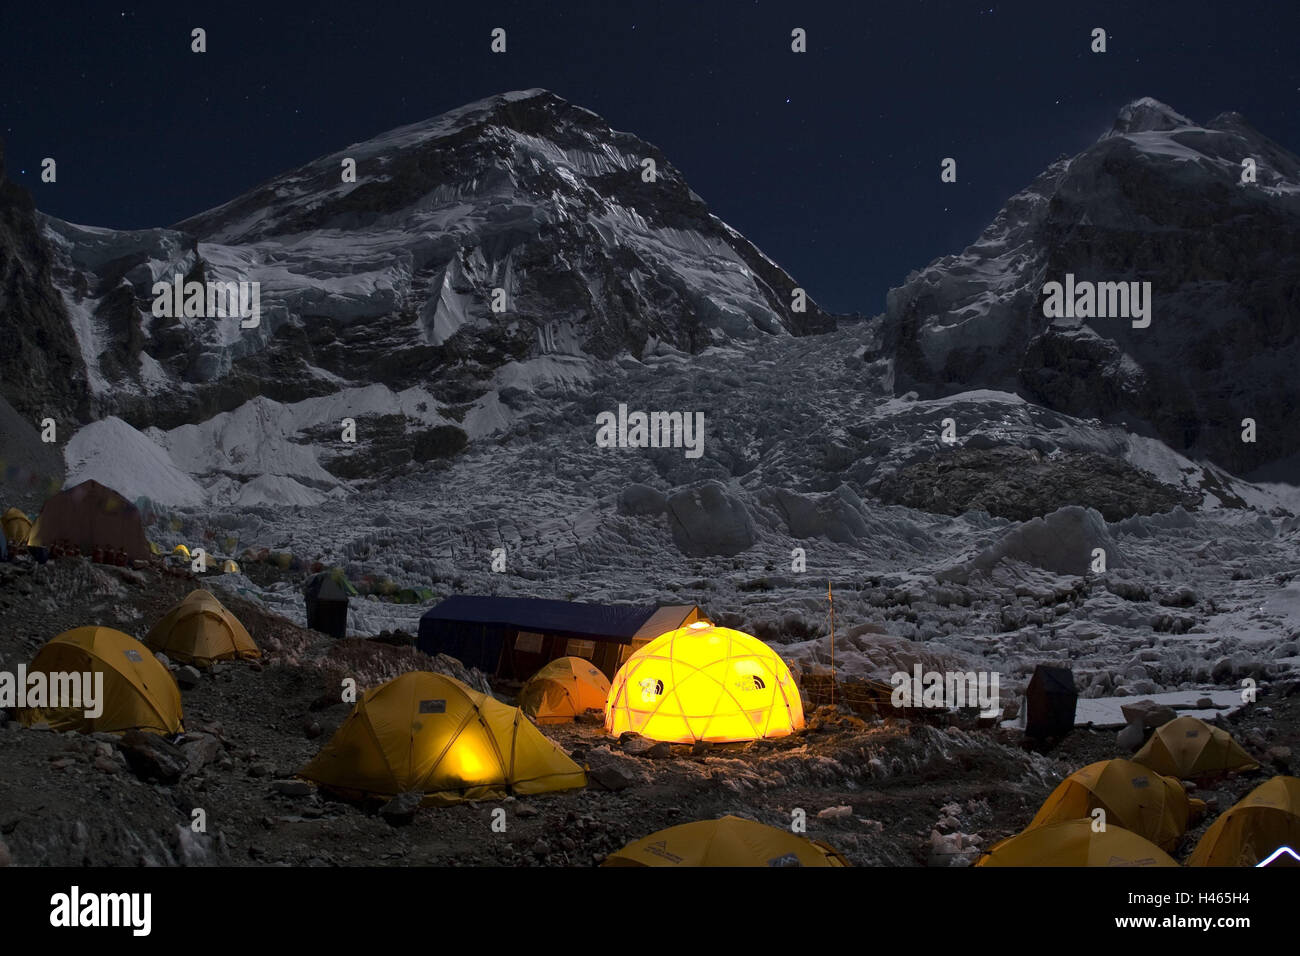 Nepal, Solo Khumbu, region Everest, Everest base camp, tents, lighting, Stock Photo